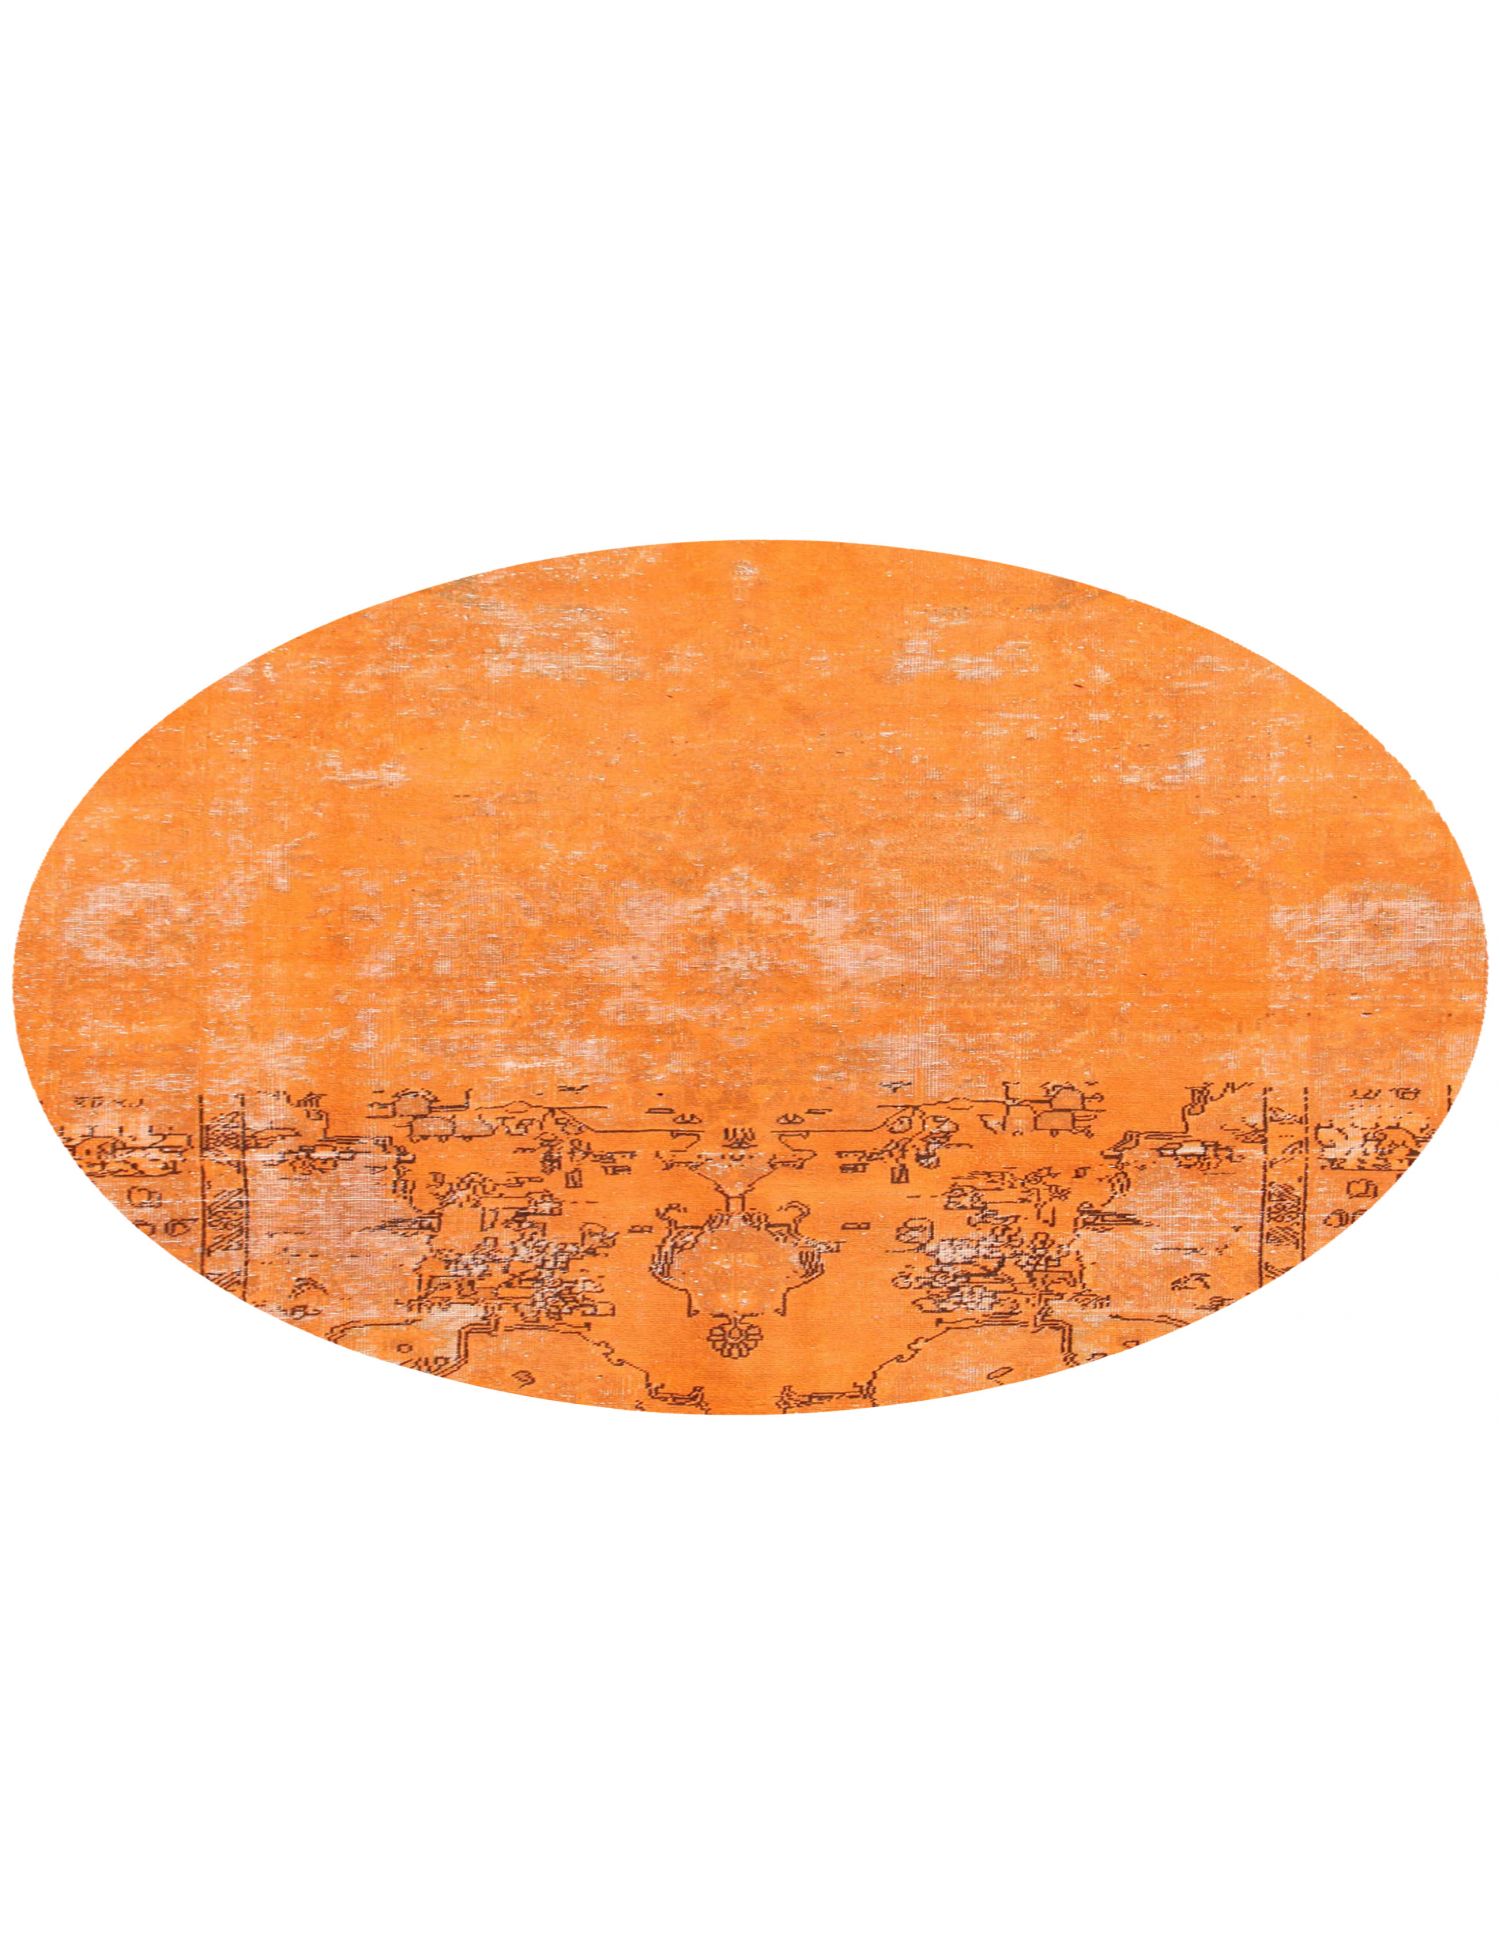 Rund  Vintage Teppich  orange <br/>194 x 194 cm